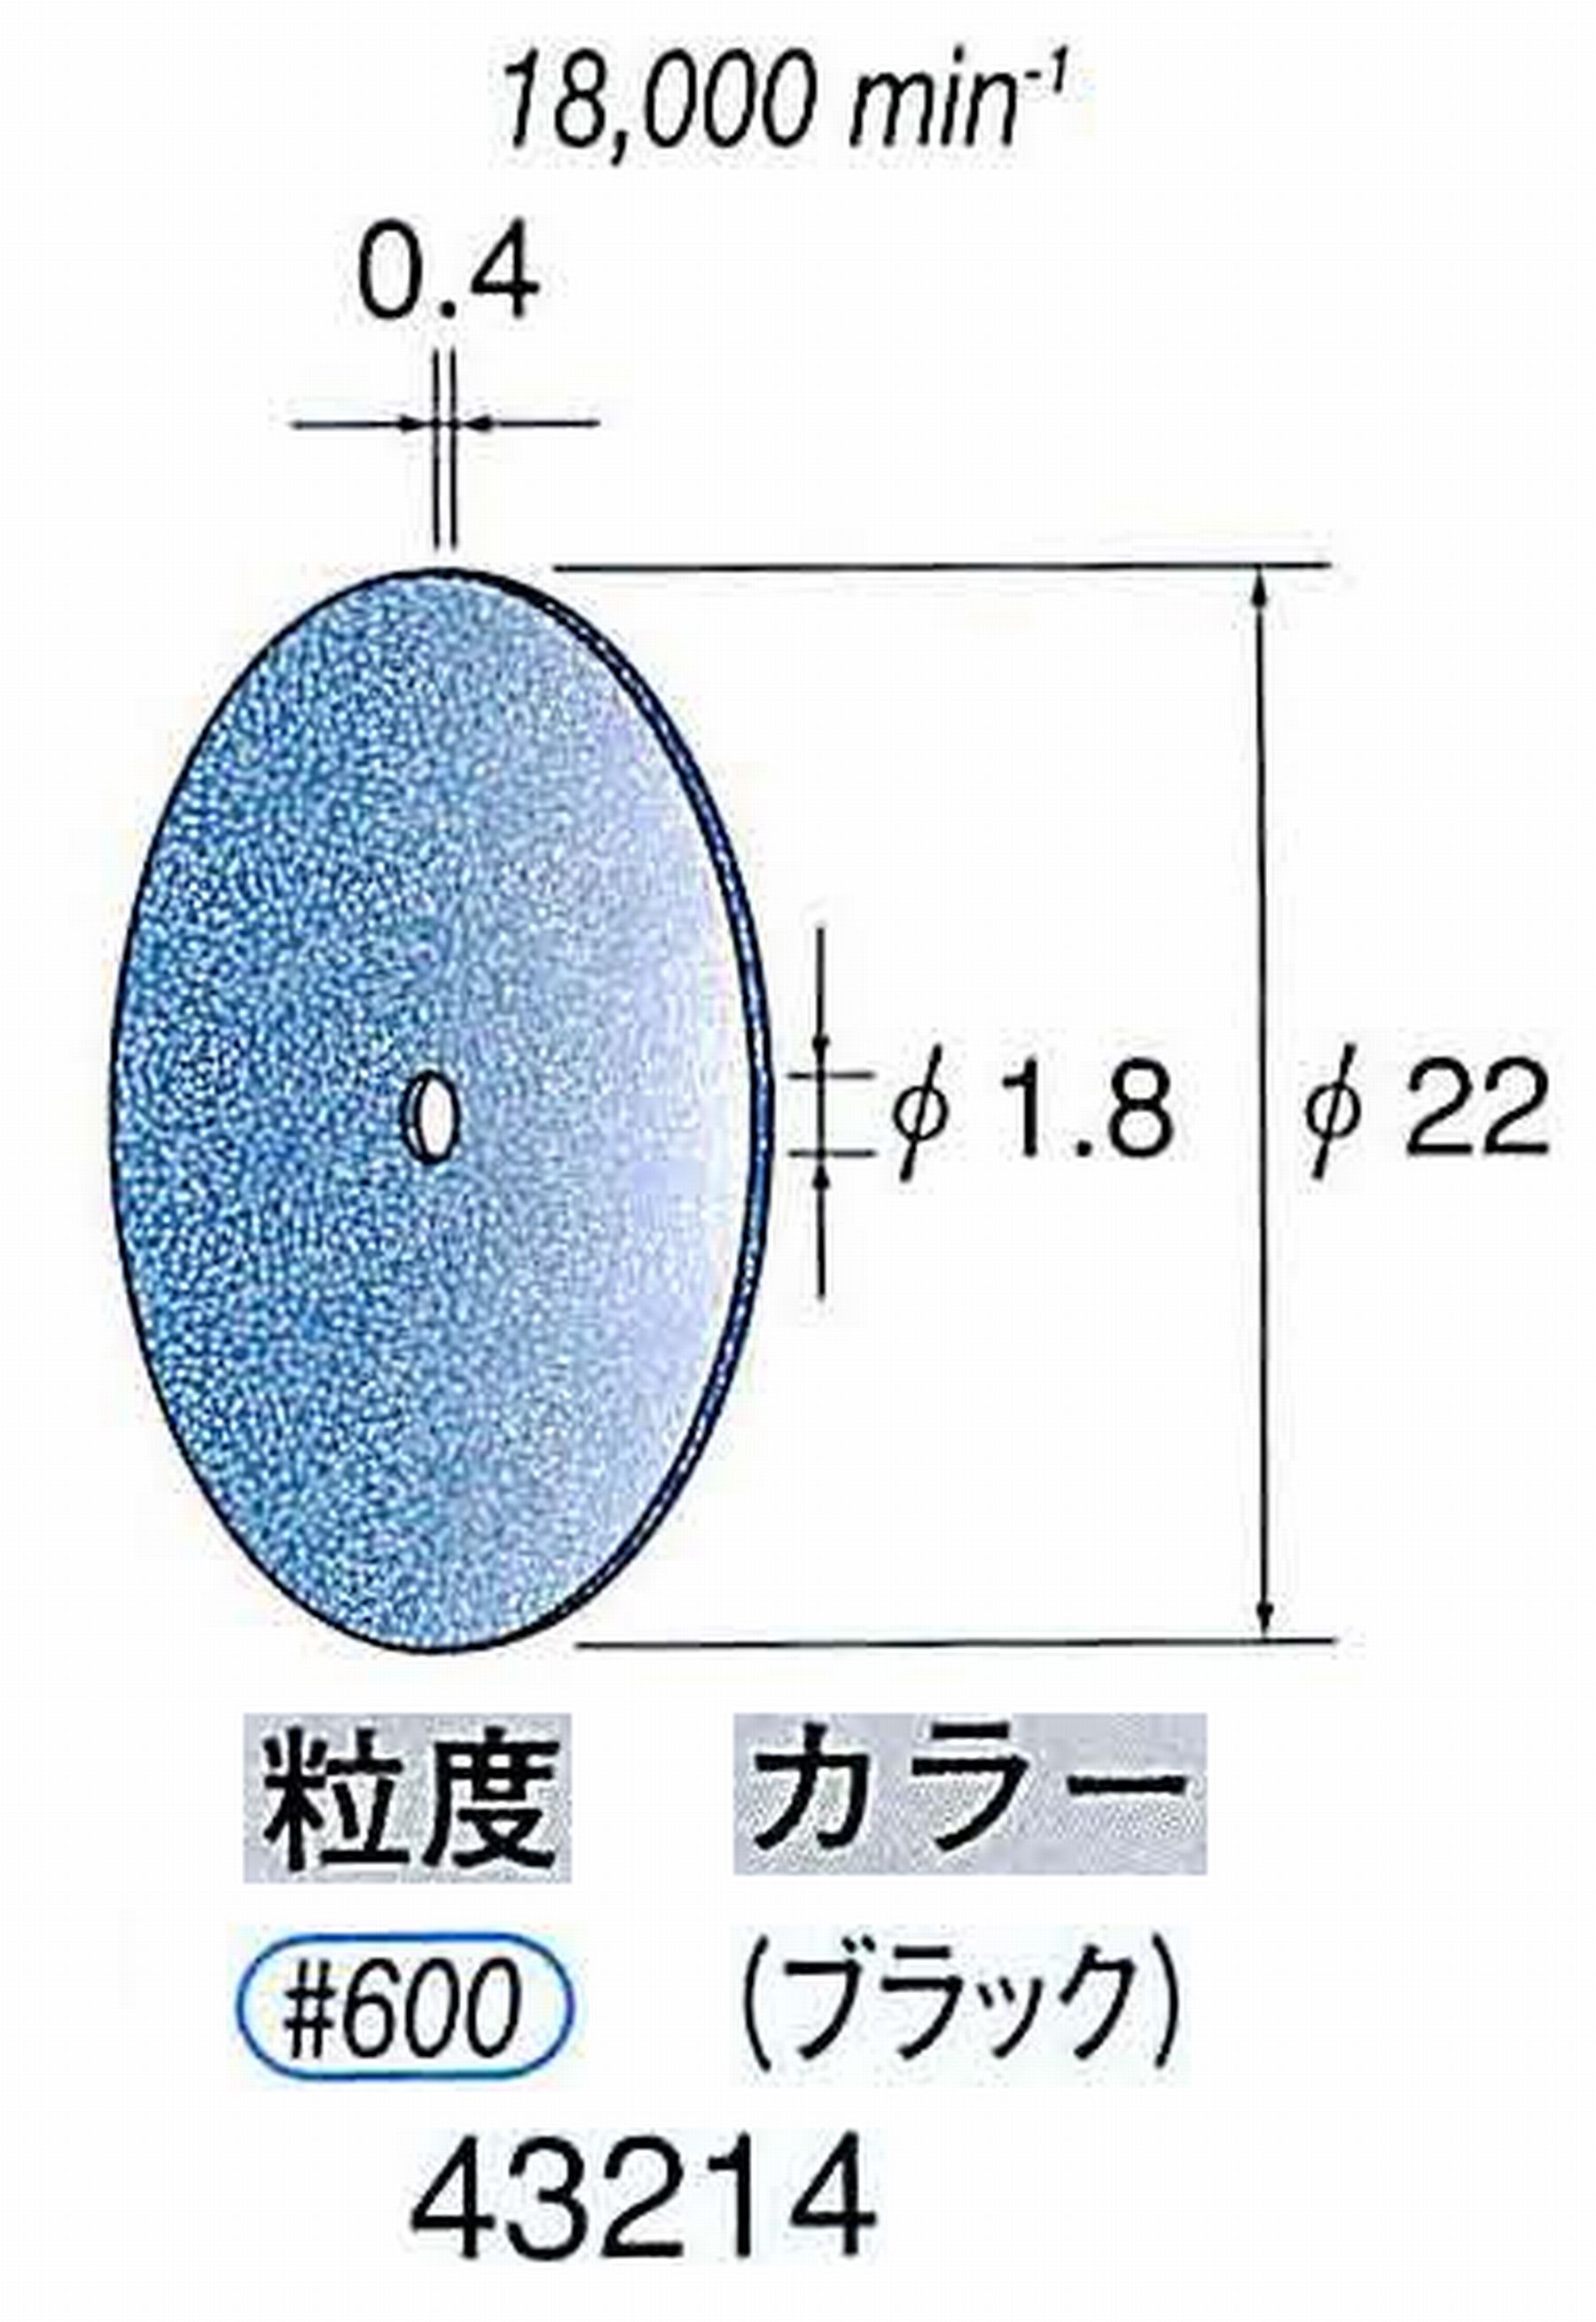 ナカニシ/NAKANISHI セラファイバー砥石ディスク(カラー ブラック) 43214